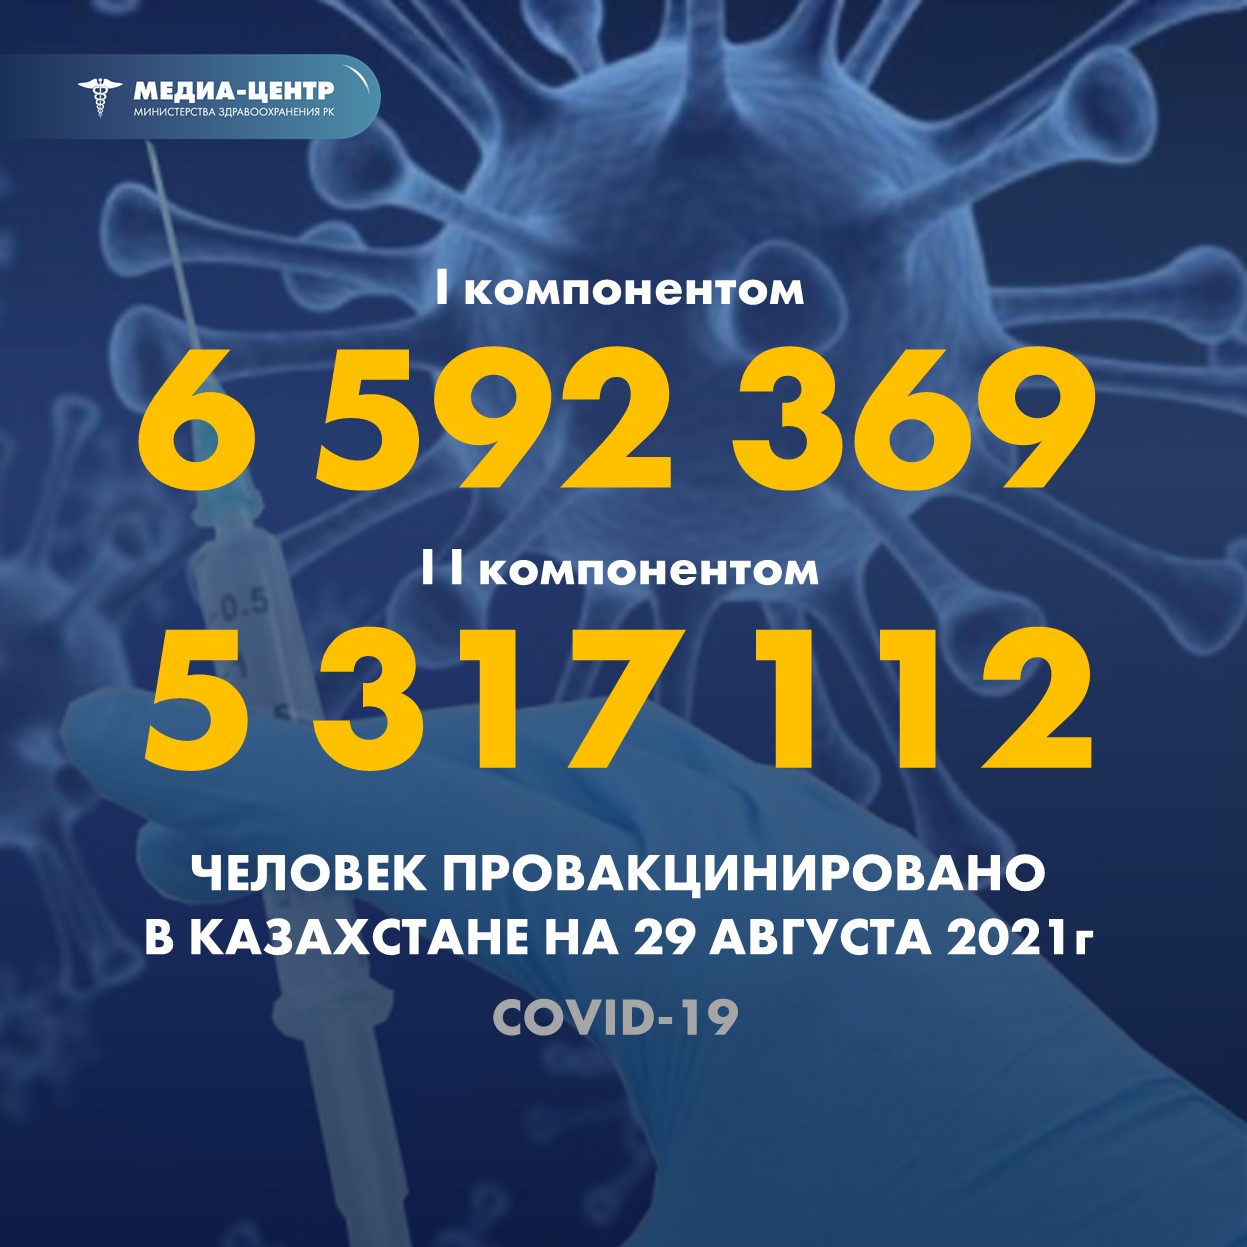 I компонентом 6 592 369 человек провакцинировано в Казахстане на 29 августа 2021 г, II компонентом 5 317 112 человек.